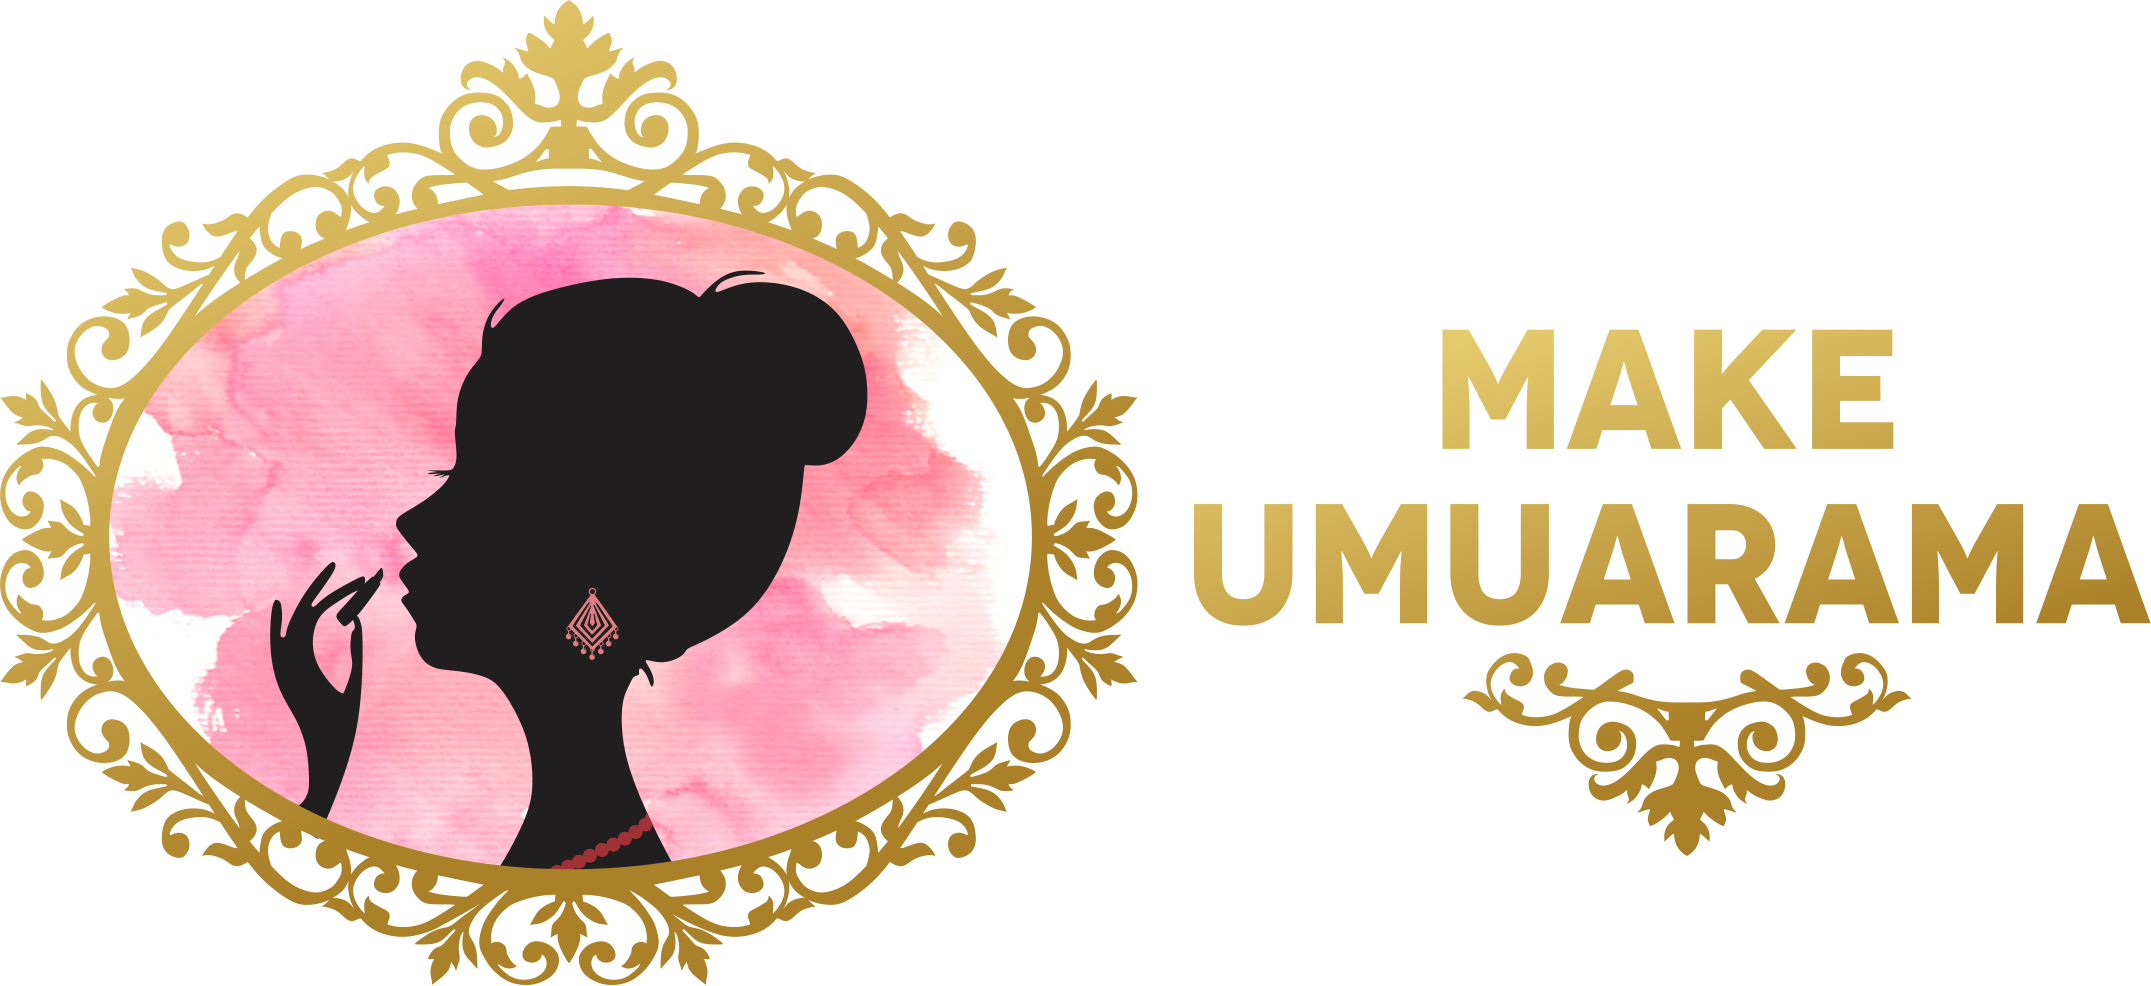 Make Umuarama